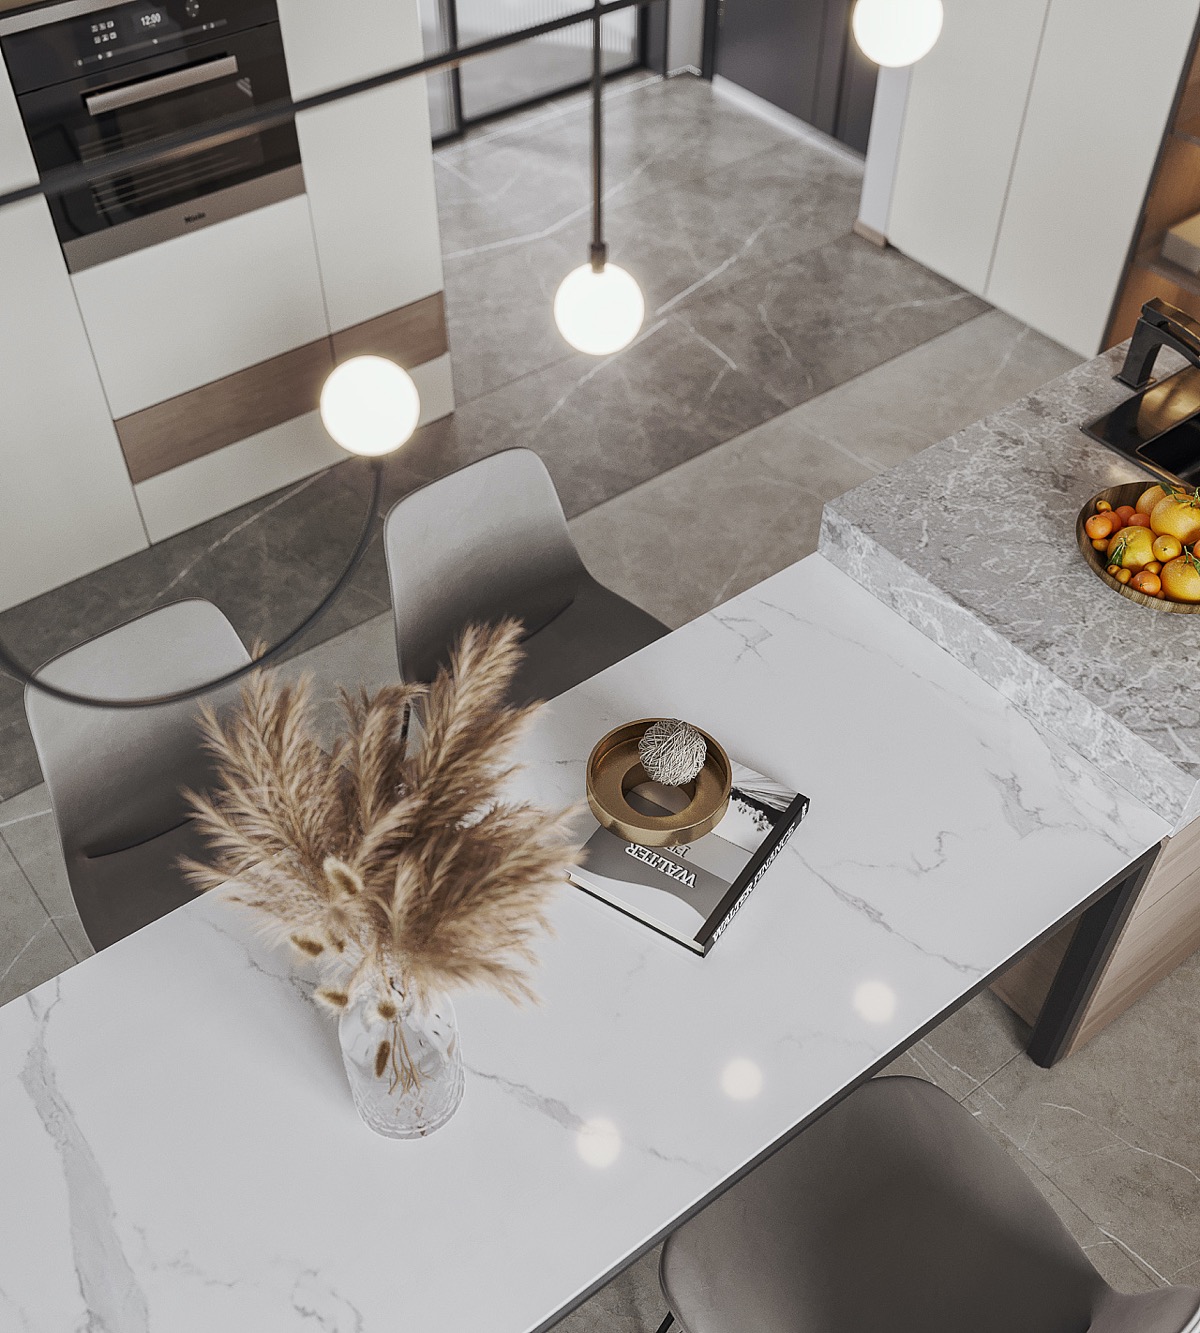 白色+木质，打造宁静时尚的现代家居空间